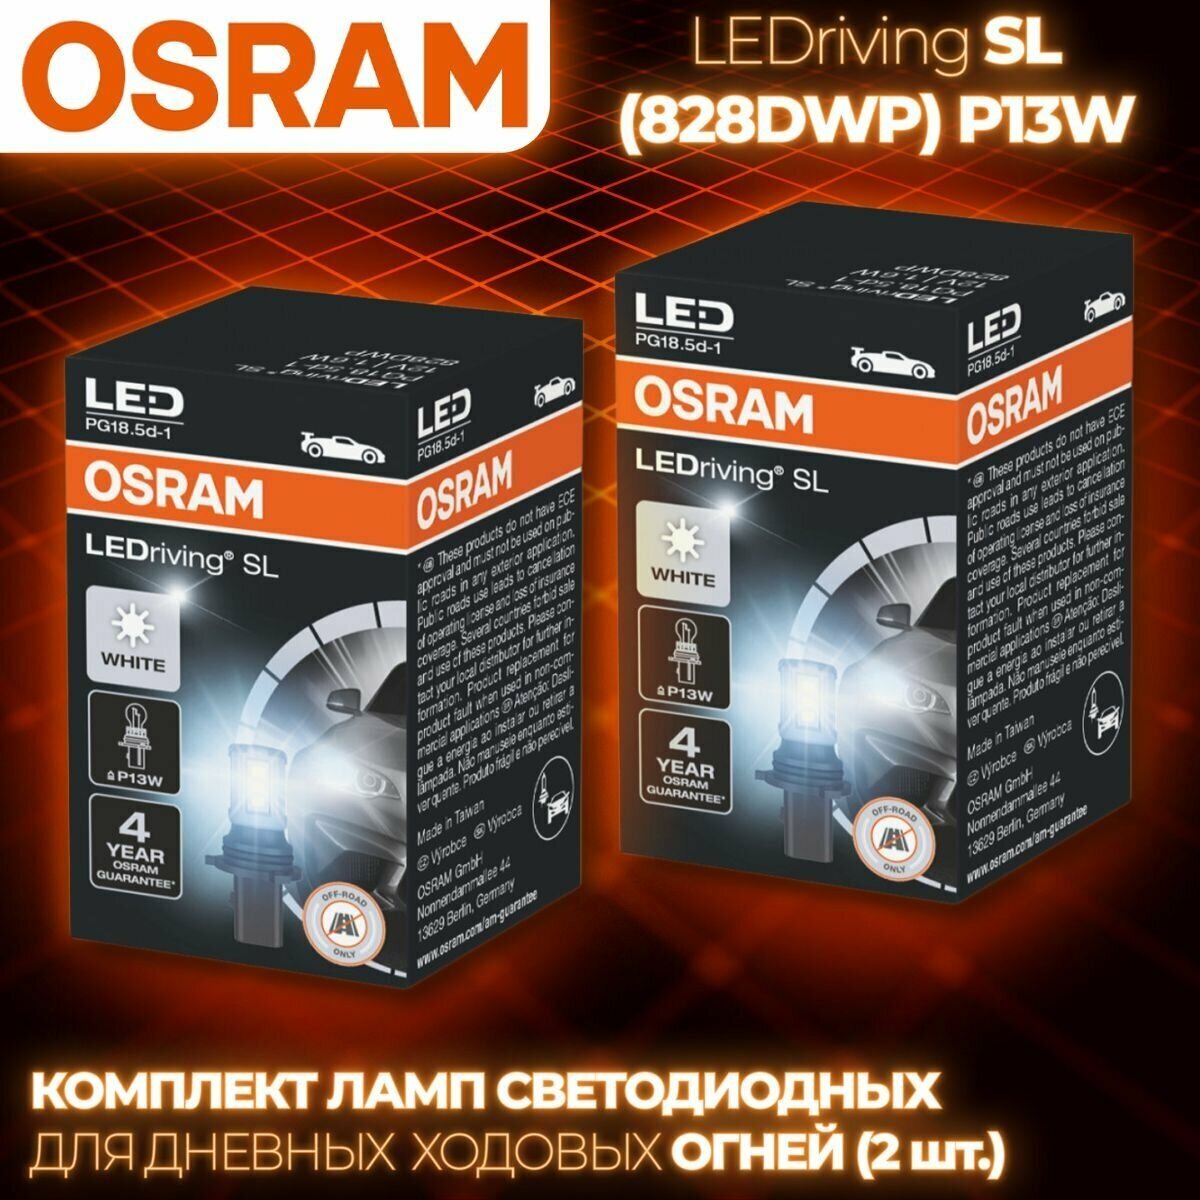 Комплект ламп автомобильных светодиодных Osram LEDriving SL (828DWP) P13W 12V 1.6W P13W 6000K 130lm (картон) (комплект 2 шт.)